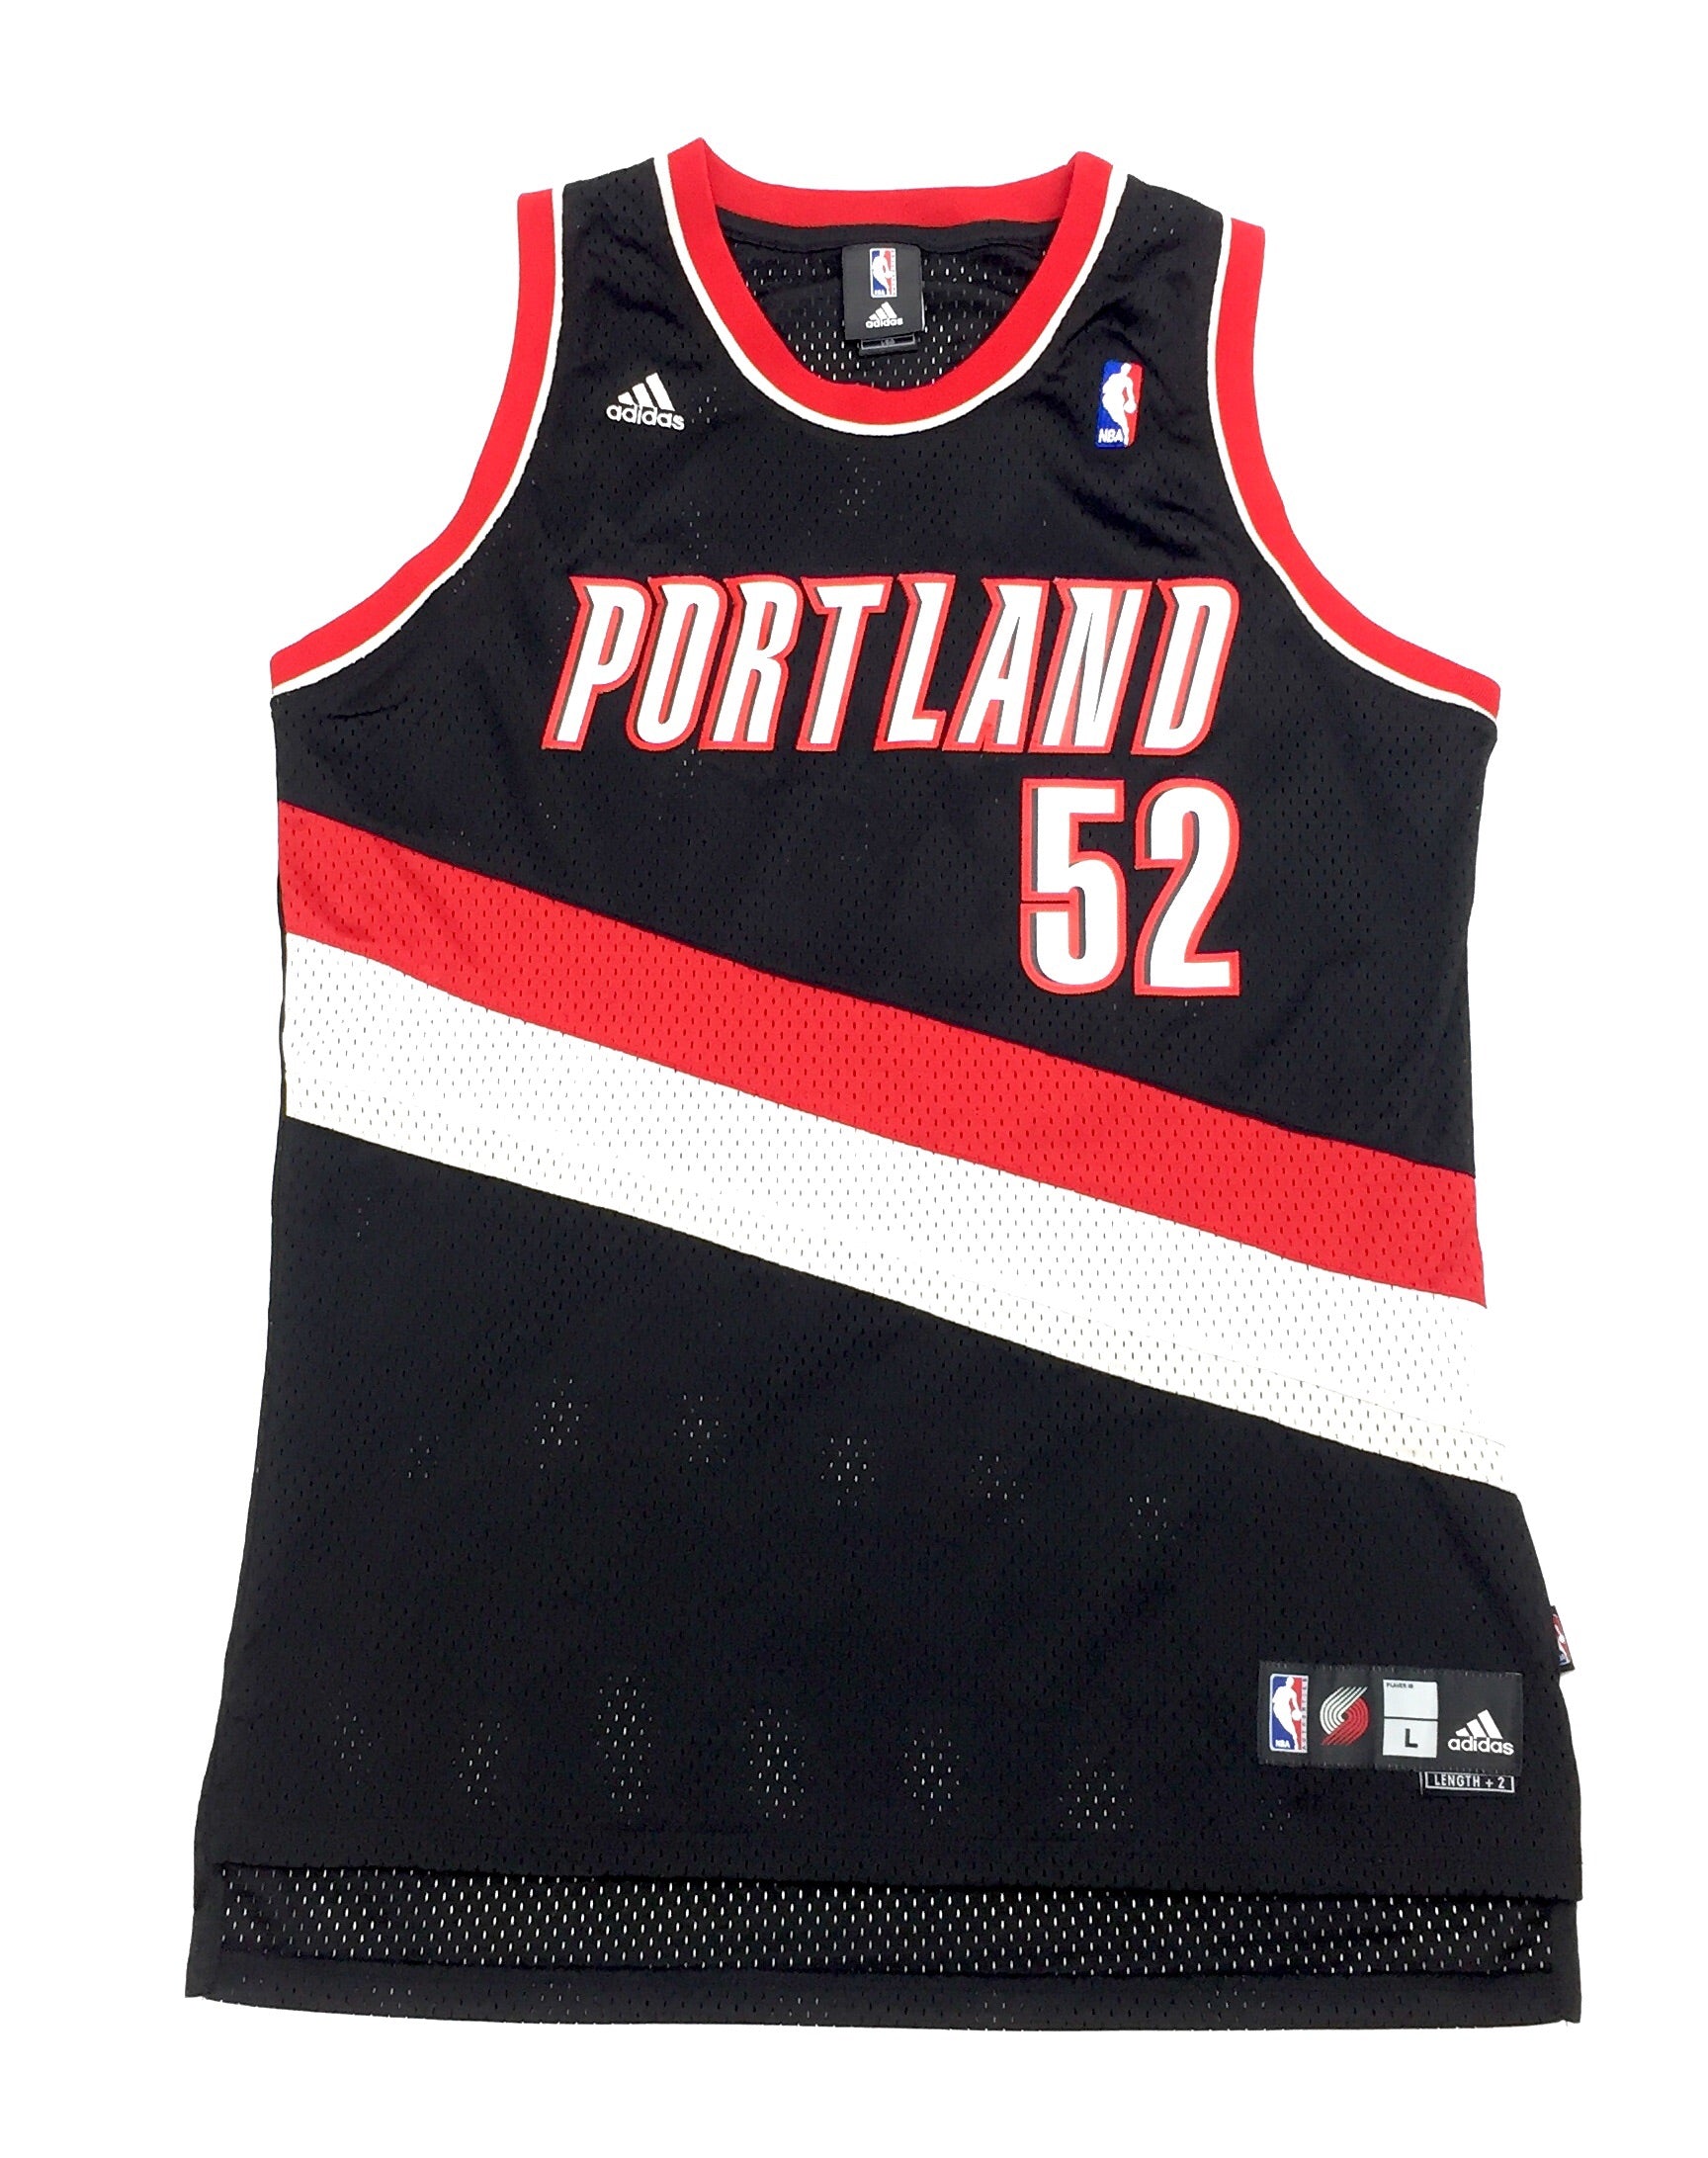 Portland Trail Blazers throwback jersey